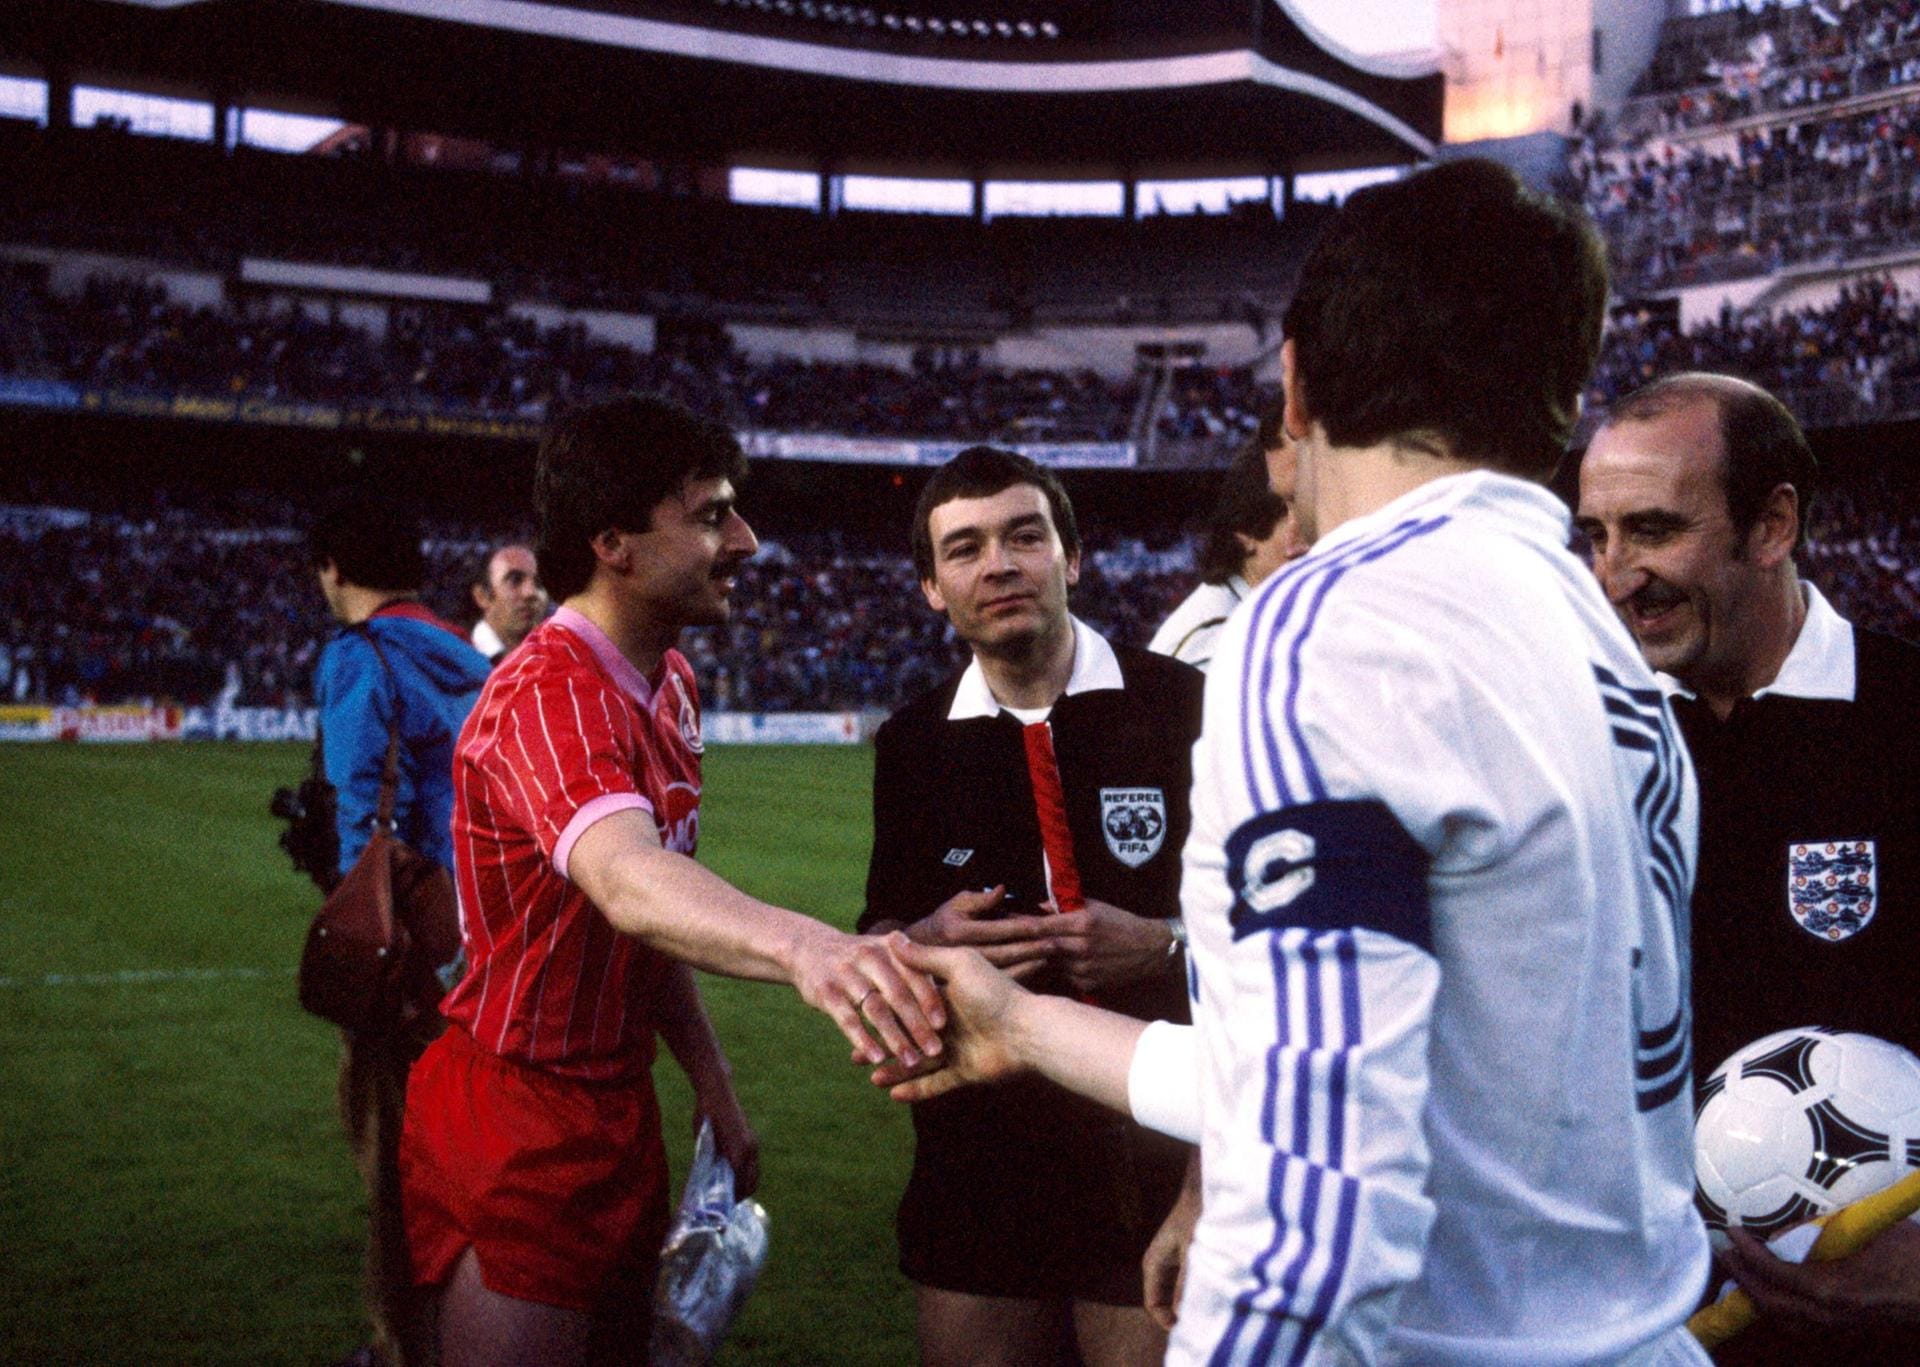 Der größte internationale Erfolg in der Geschichte des Vereins ist der Einzug ins UEFA-Cup-Finale 1986 gegen Real Madrid. Hier Kapitän Klaus Allofs bei der Begrüßung mit seinem Gegenüber José Antonio Camacho. Im Hinspiel in Madrid ging der FC in Führung und verlor anschließend noch mit 5:1.